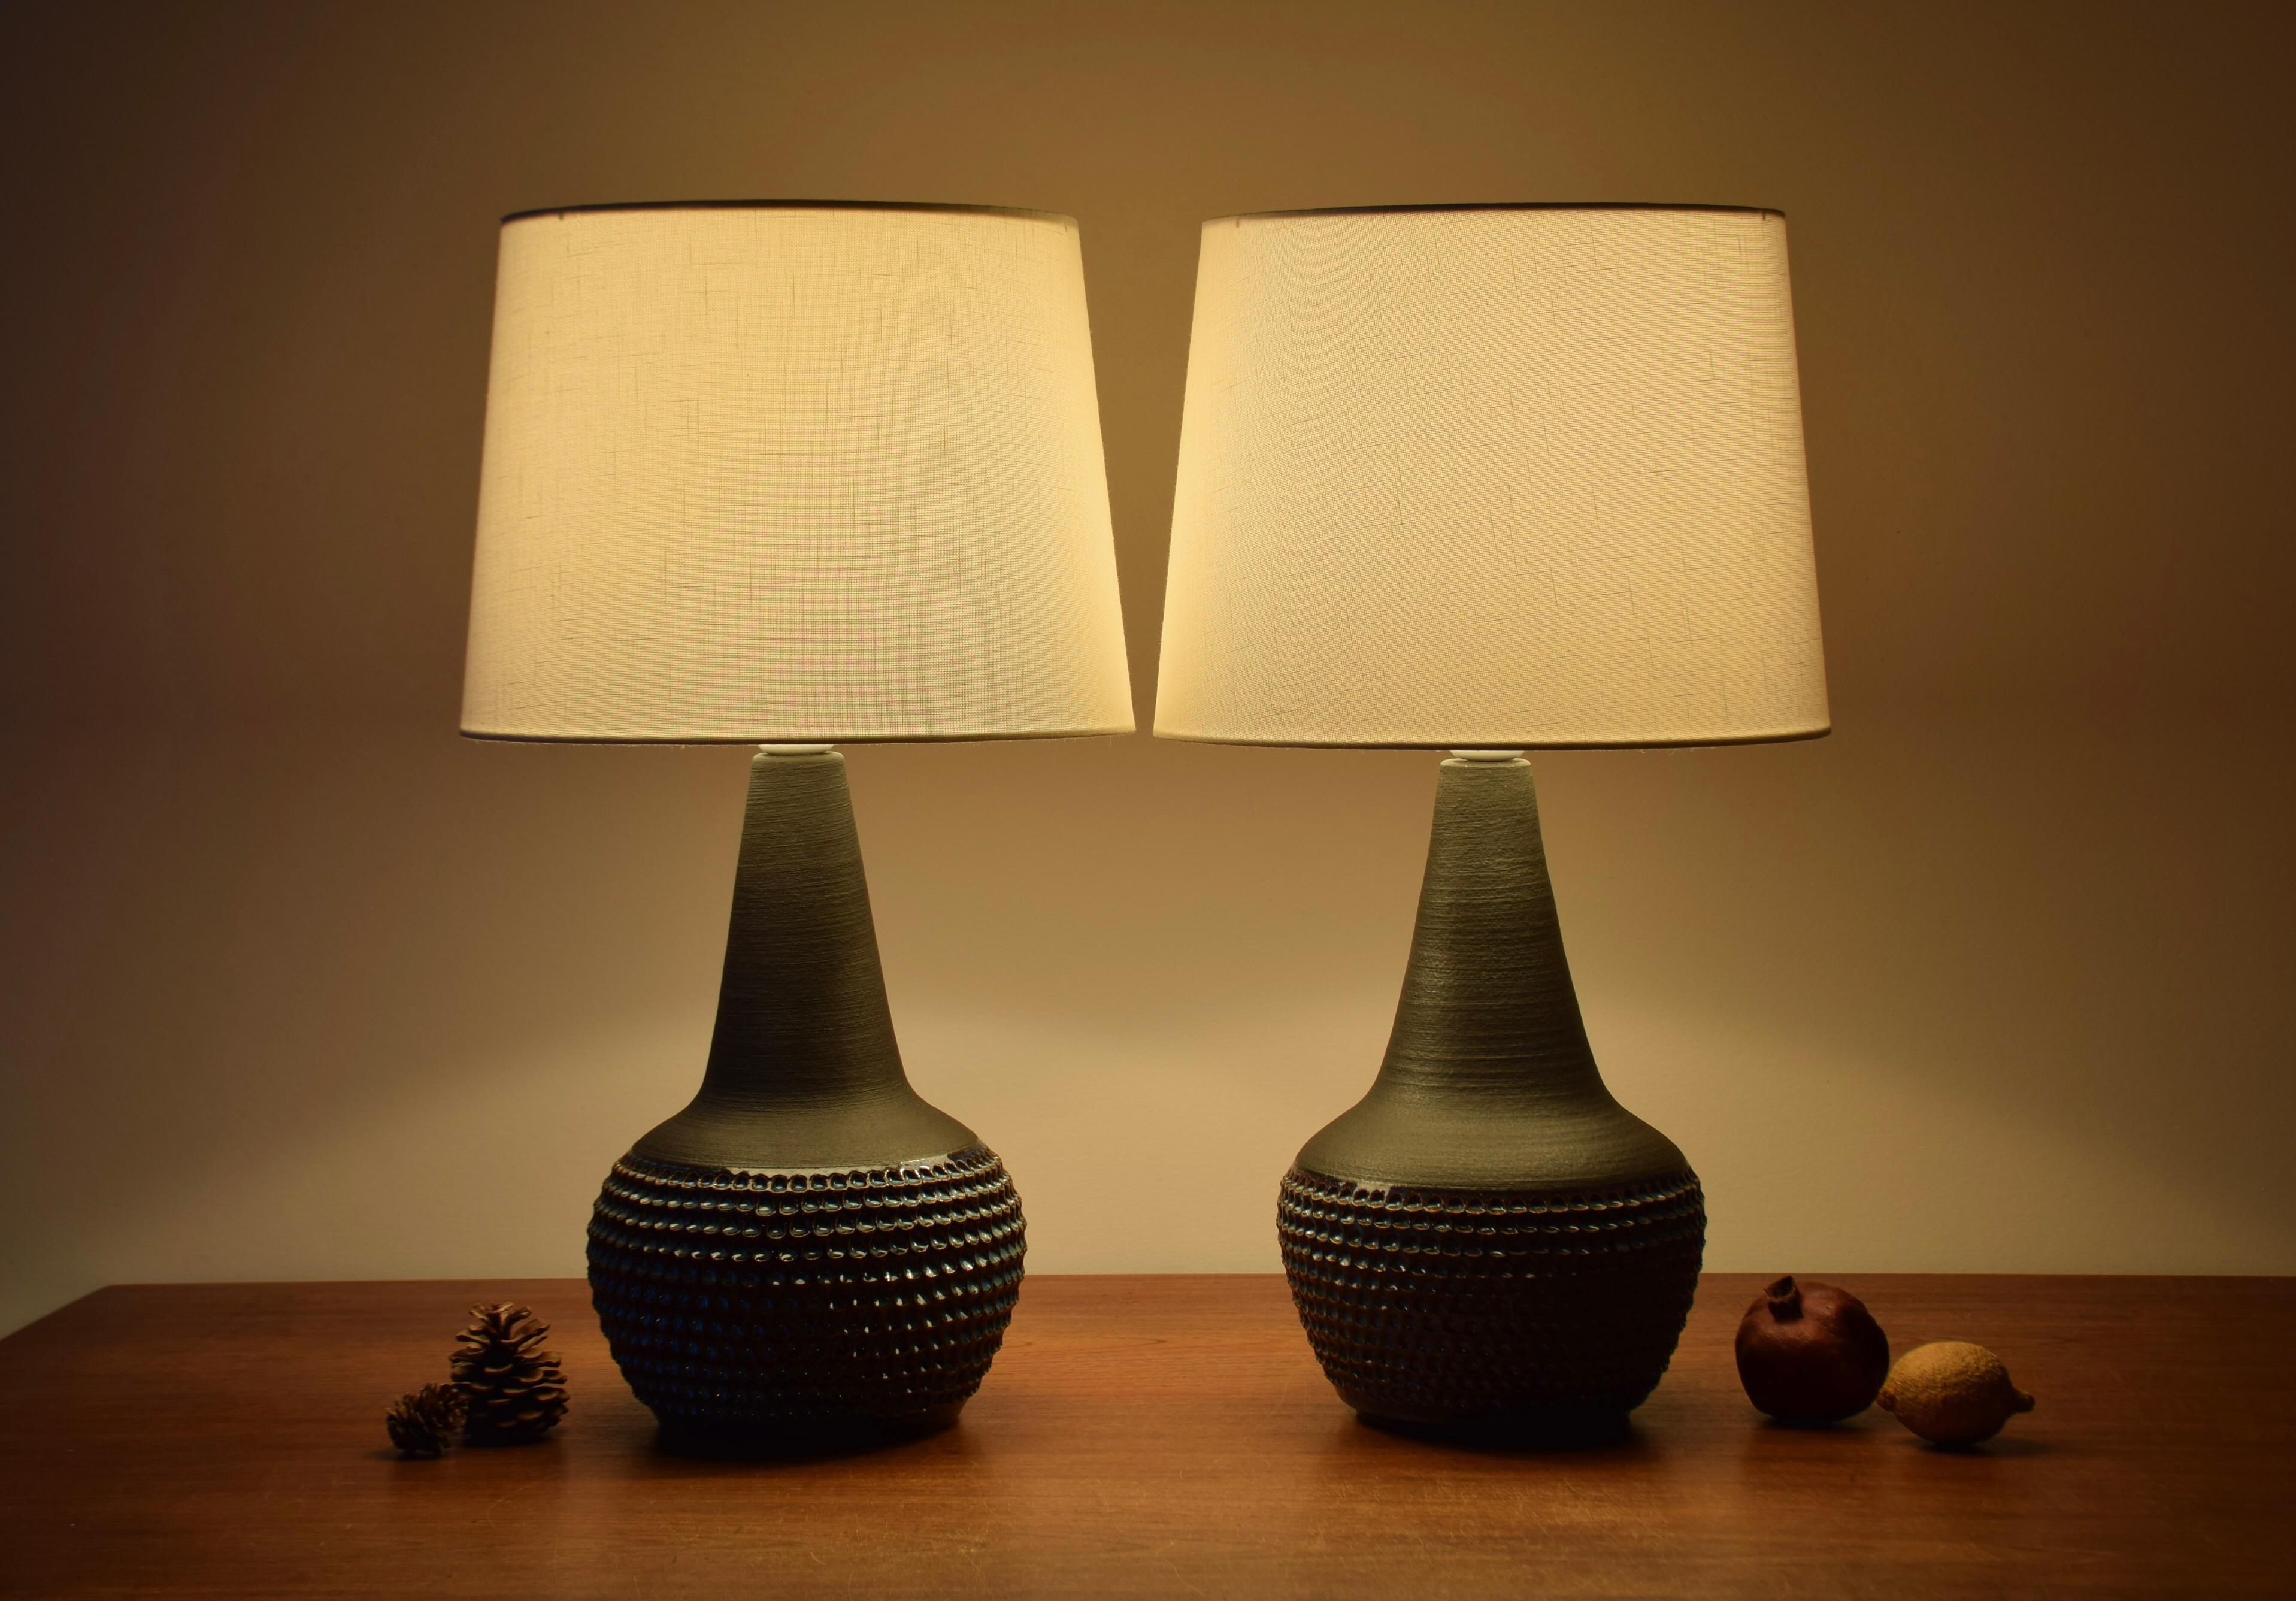 Paire de lampes de table danoises du milieu du siècle, conçues par Einar Johansen pour le fabricant danois de grès Søholm. Fabriqué vers les années 1960.

Les lampes ont une glaçure mate brun foncé sur le col et l'épaule, contrastant avec une